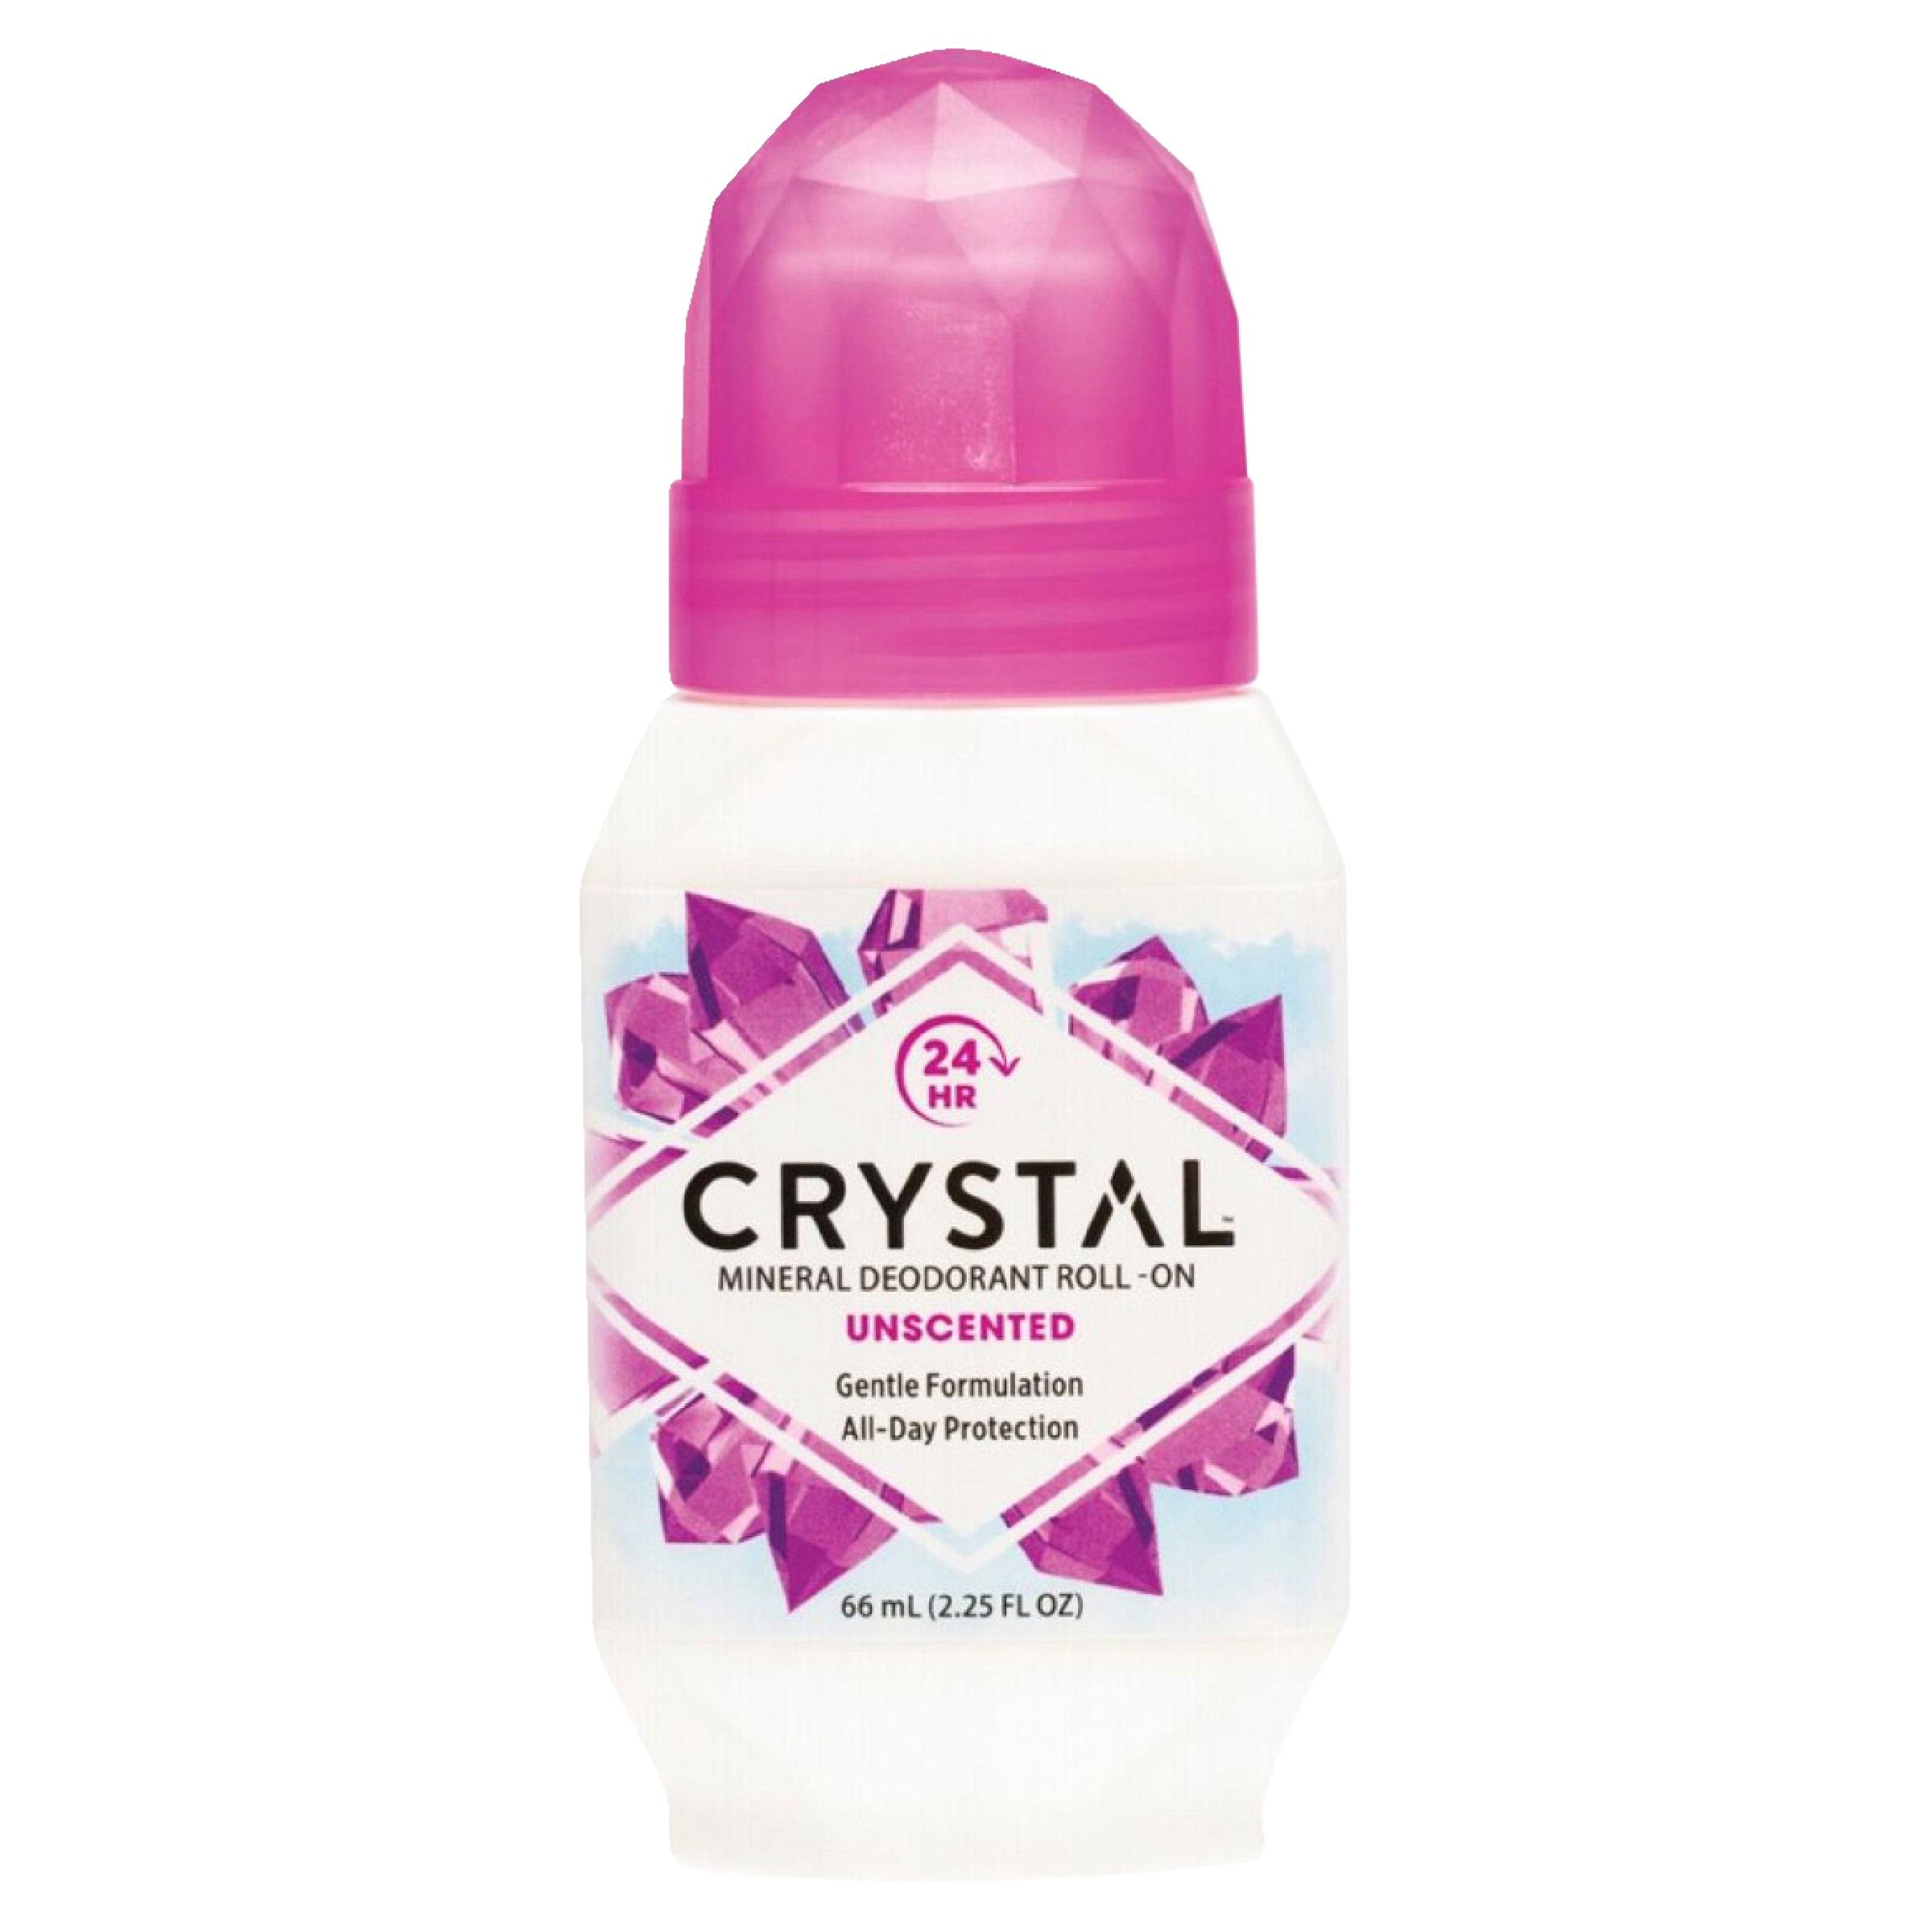 Crystal Deodorant Roll-On - 66ml